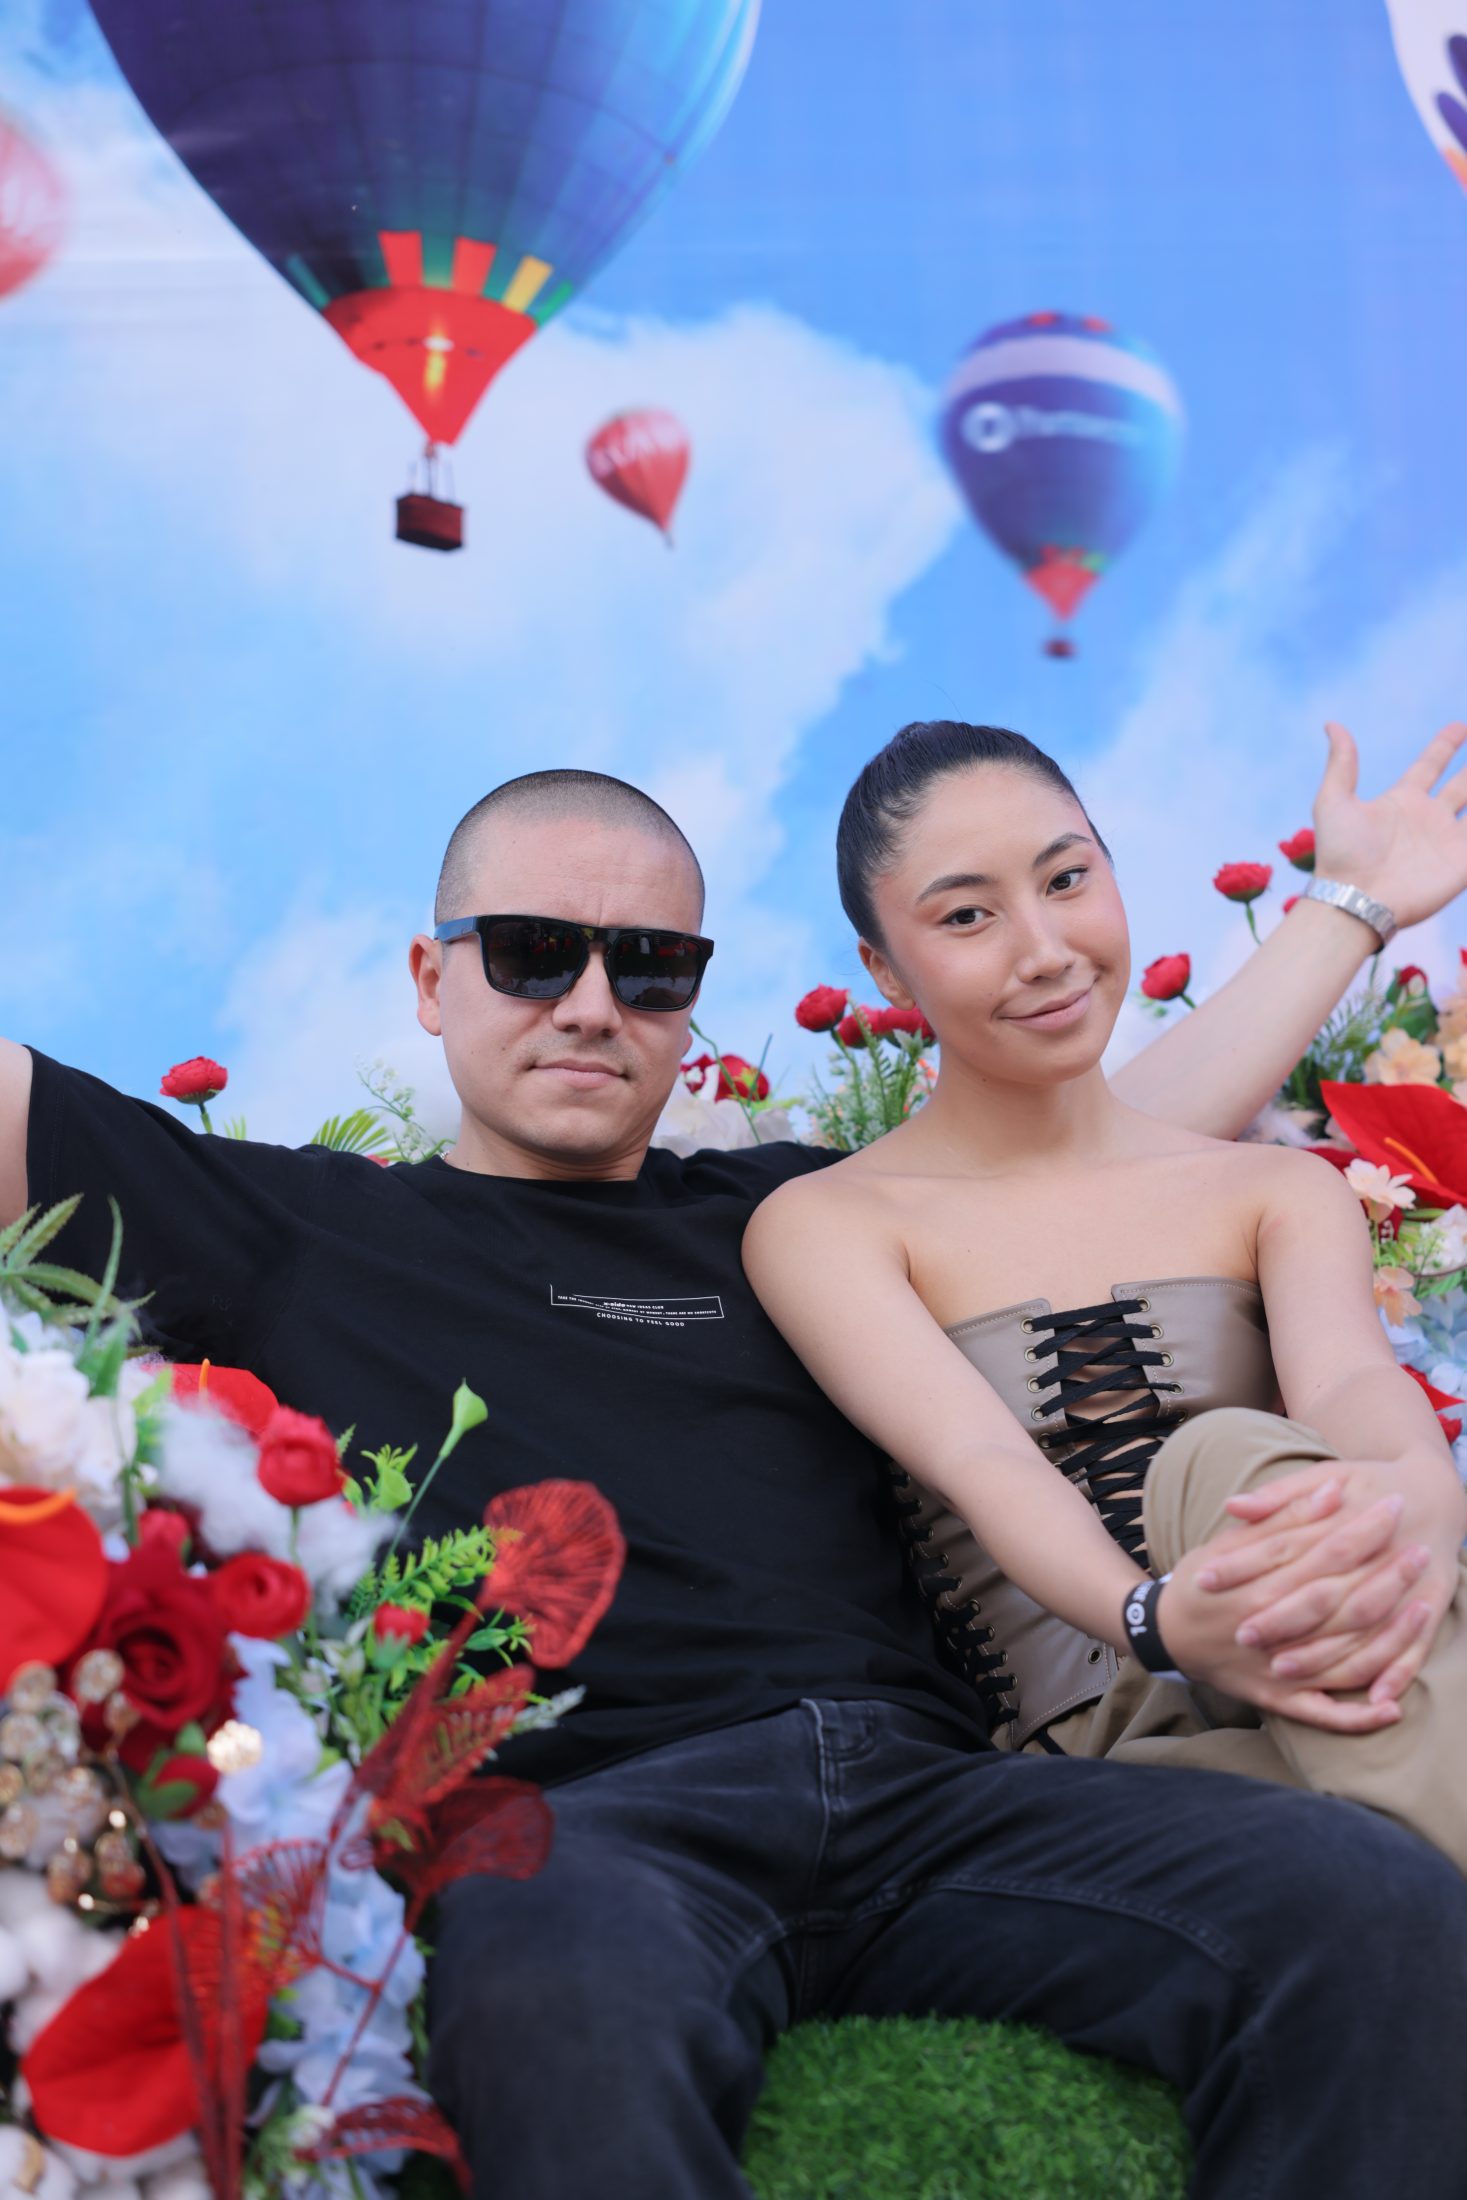 Как прошел юбилейный Пикник by Partners в Алматы? Рассказываем подробности крутого ивента